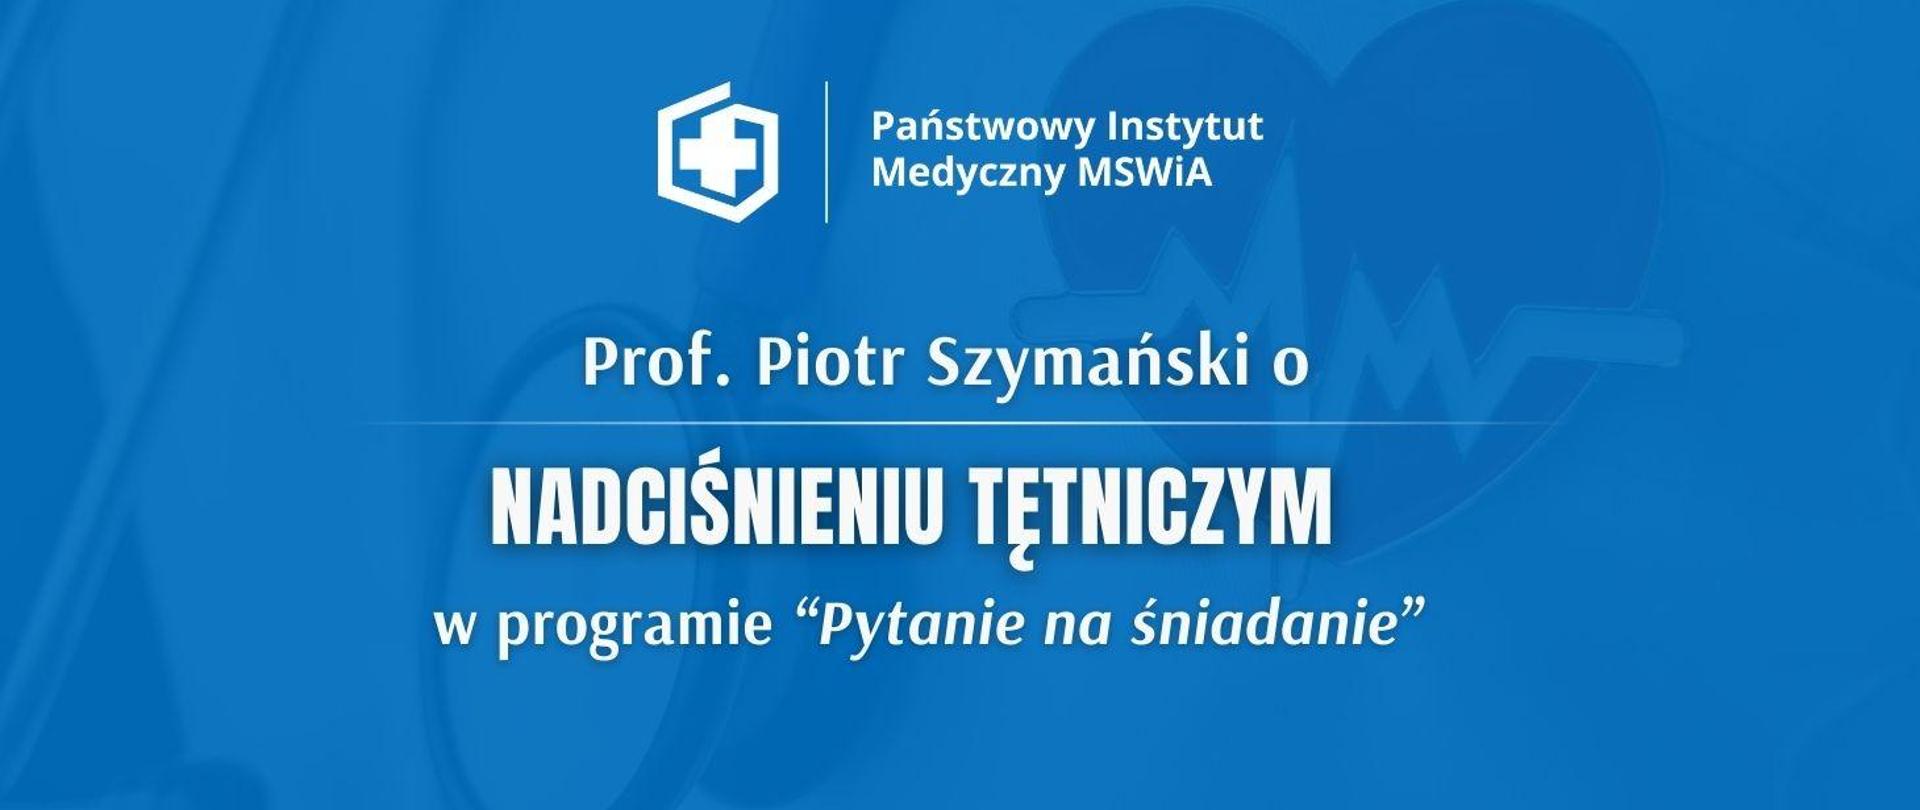 Prof. Piotr Szymański o nadciśnieniu tętniczym